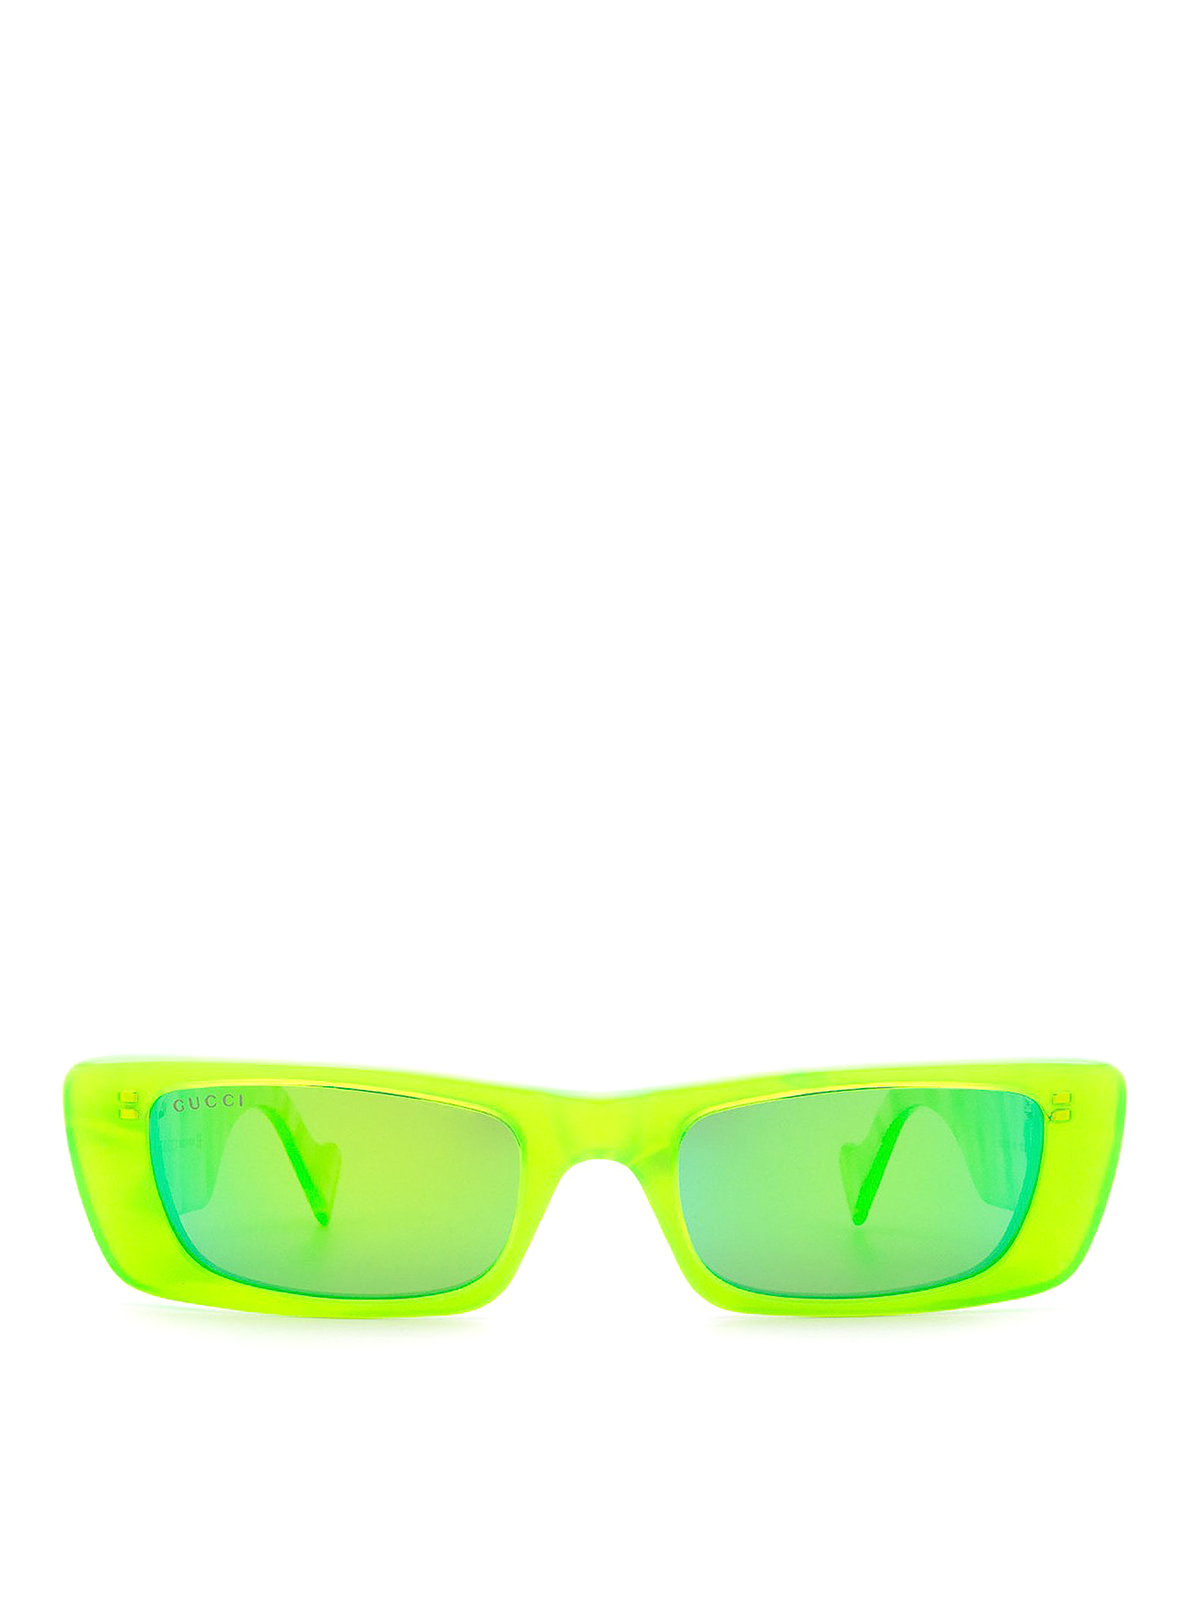 Neon Yellow Retro Sunglasses Mosh pit approved. Bite like a viper. – Far  Out Sunglasses